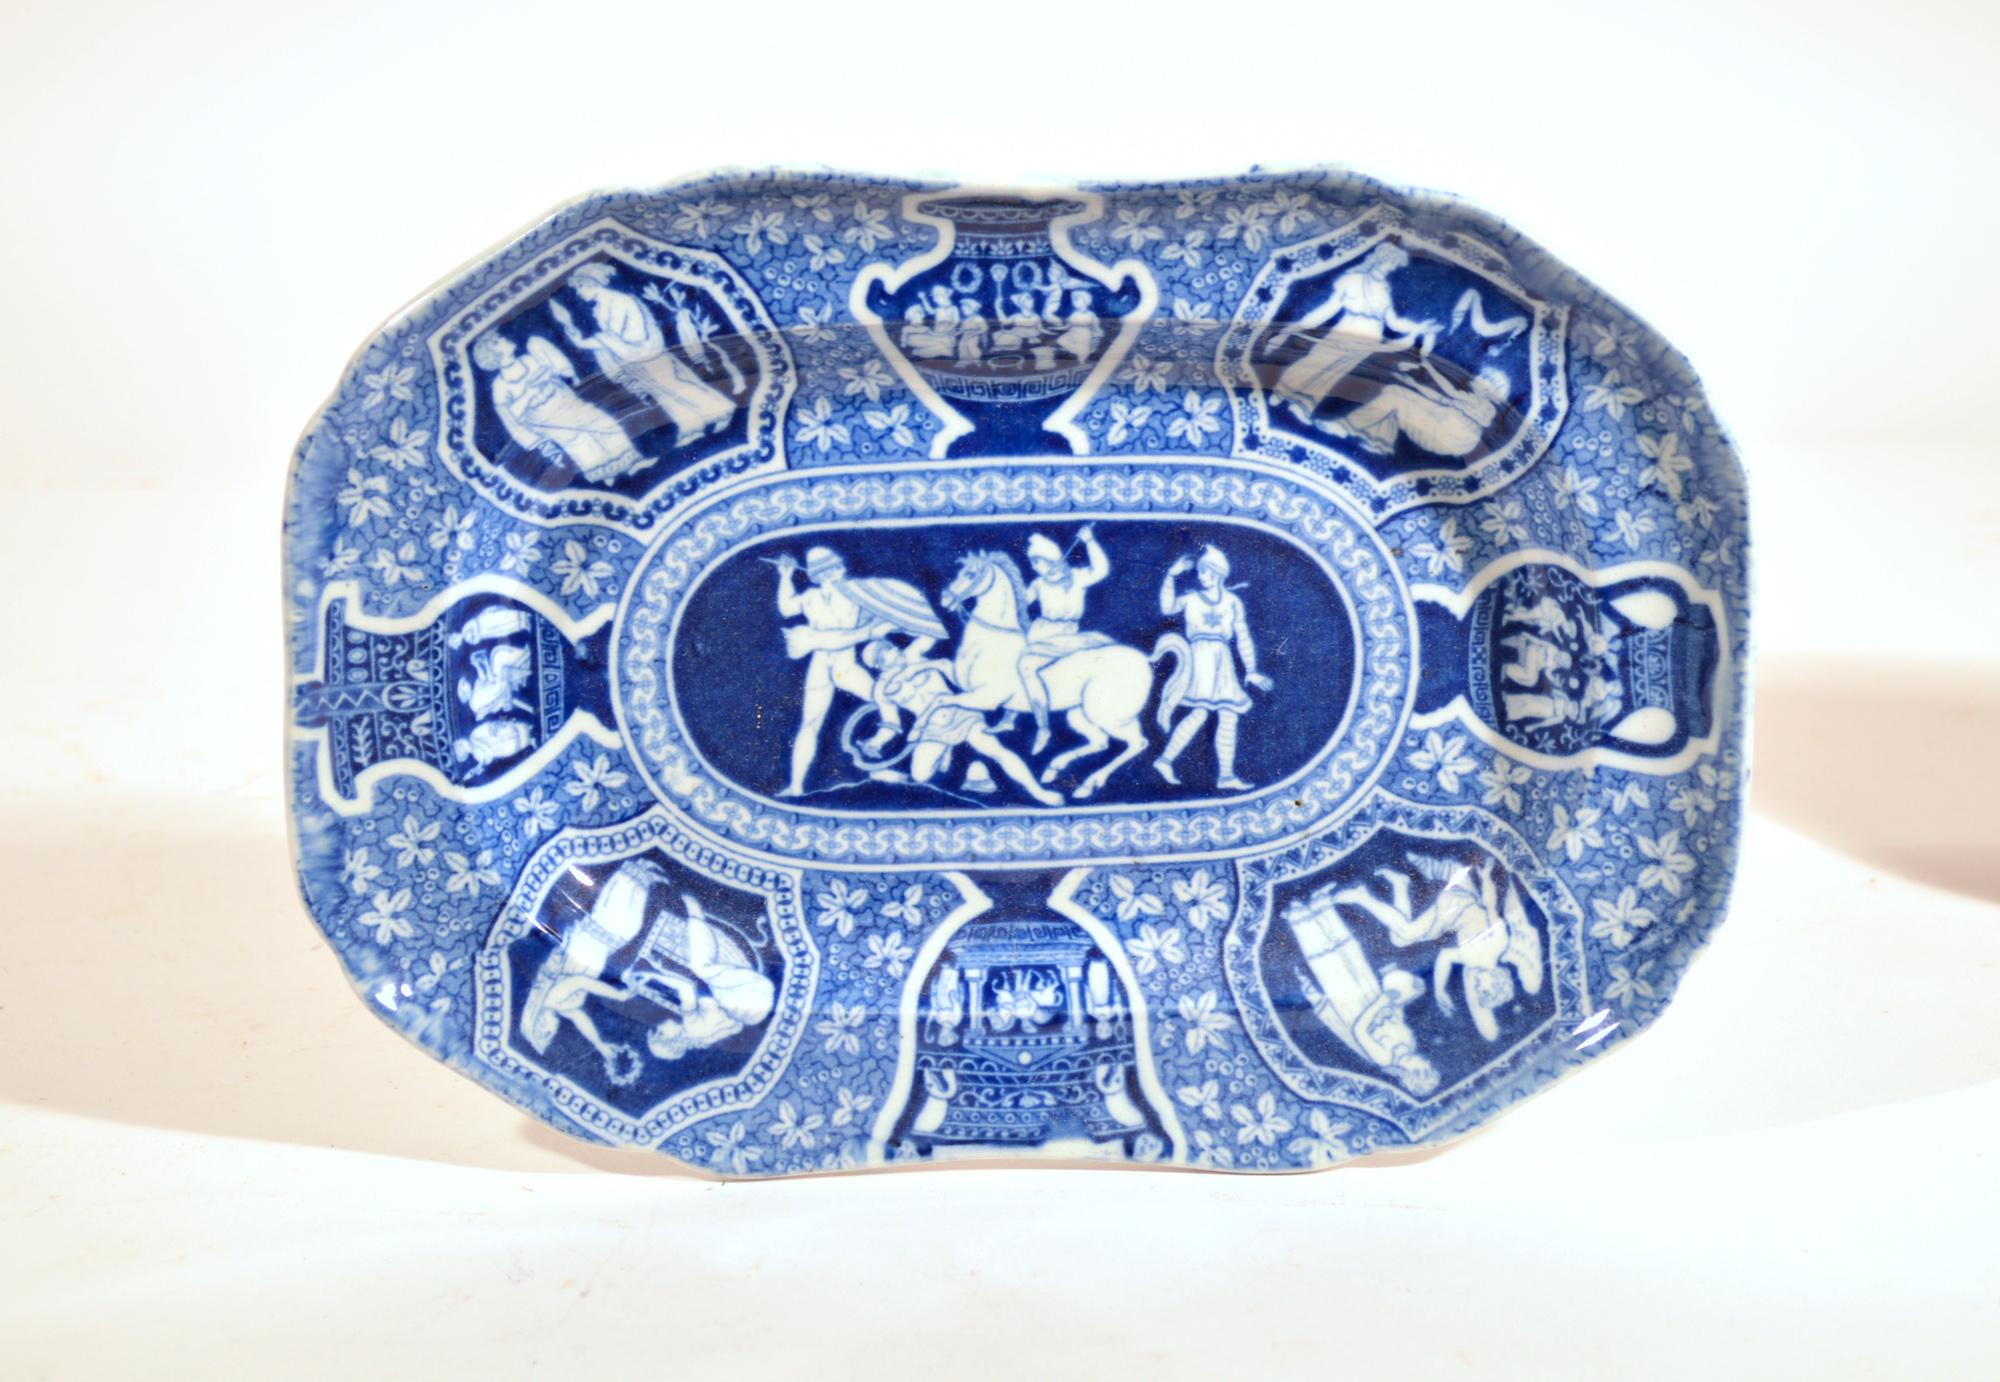 Spode neoklassischen griechischen Muster blau rechteckigen Dessertteller,
Vier Figuren im Kampf,
Anfang des 19. Jahrhunderts

Das Geschirr mit griechischem Muster von Spode ist blau bedruckt und zeigt in der Mitte 